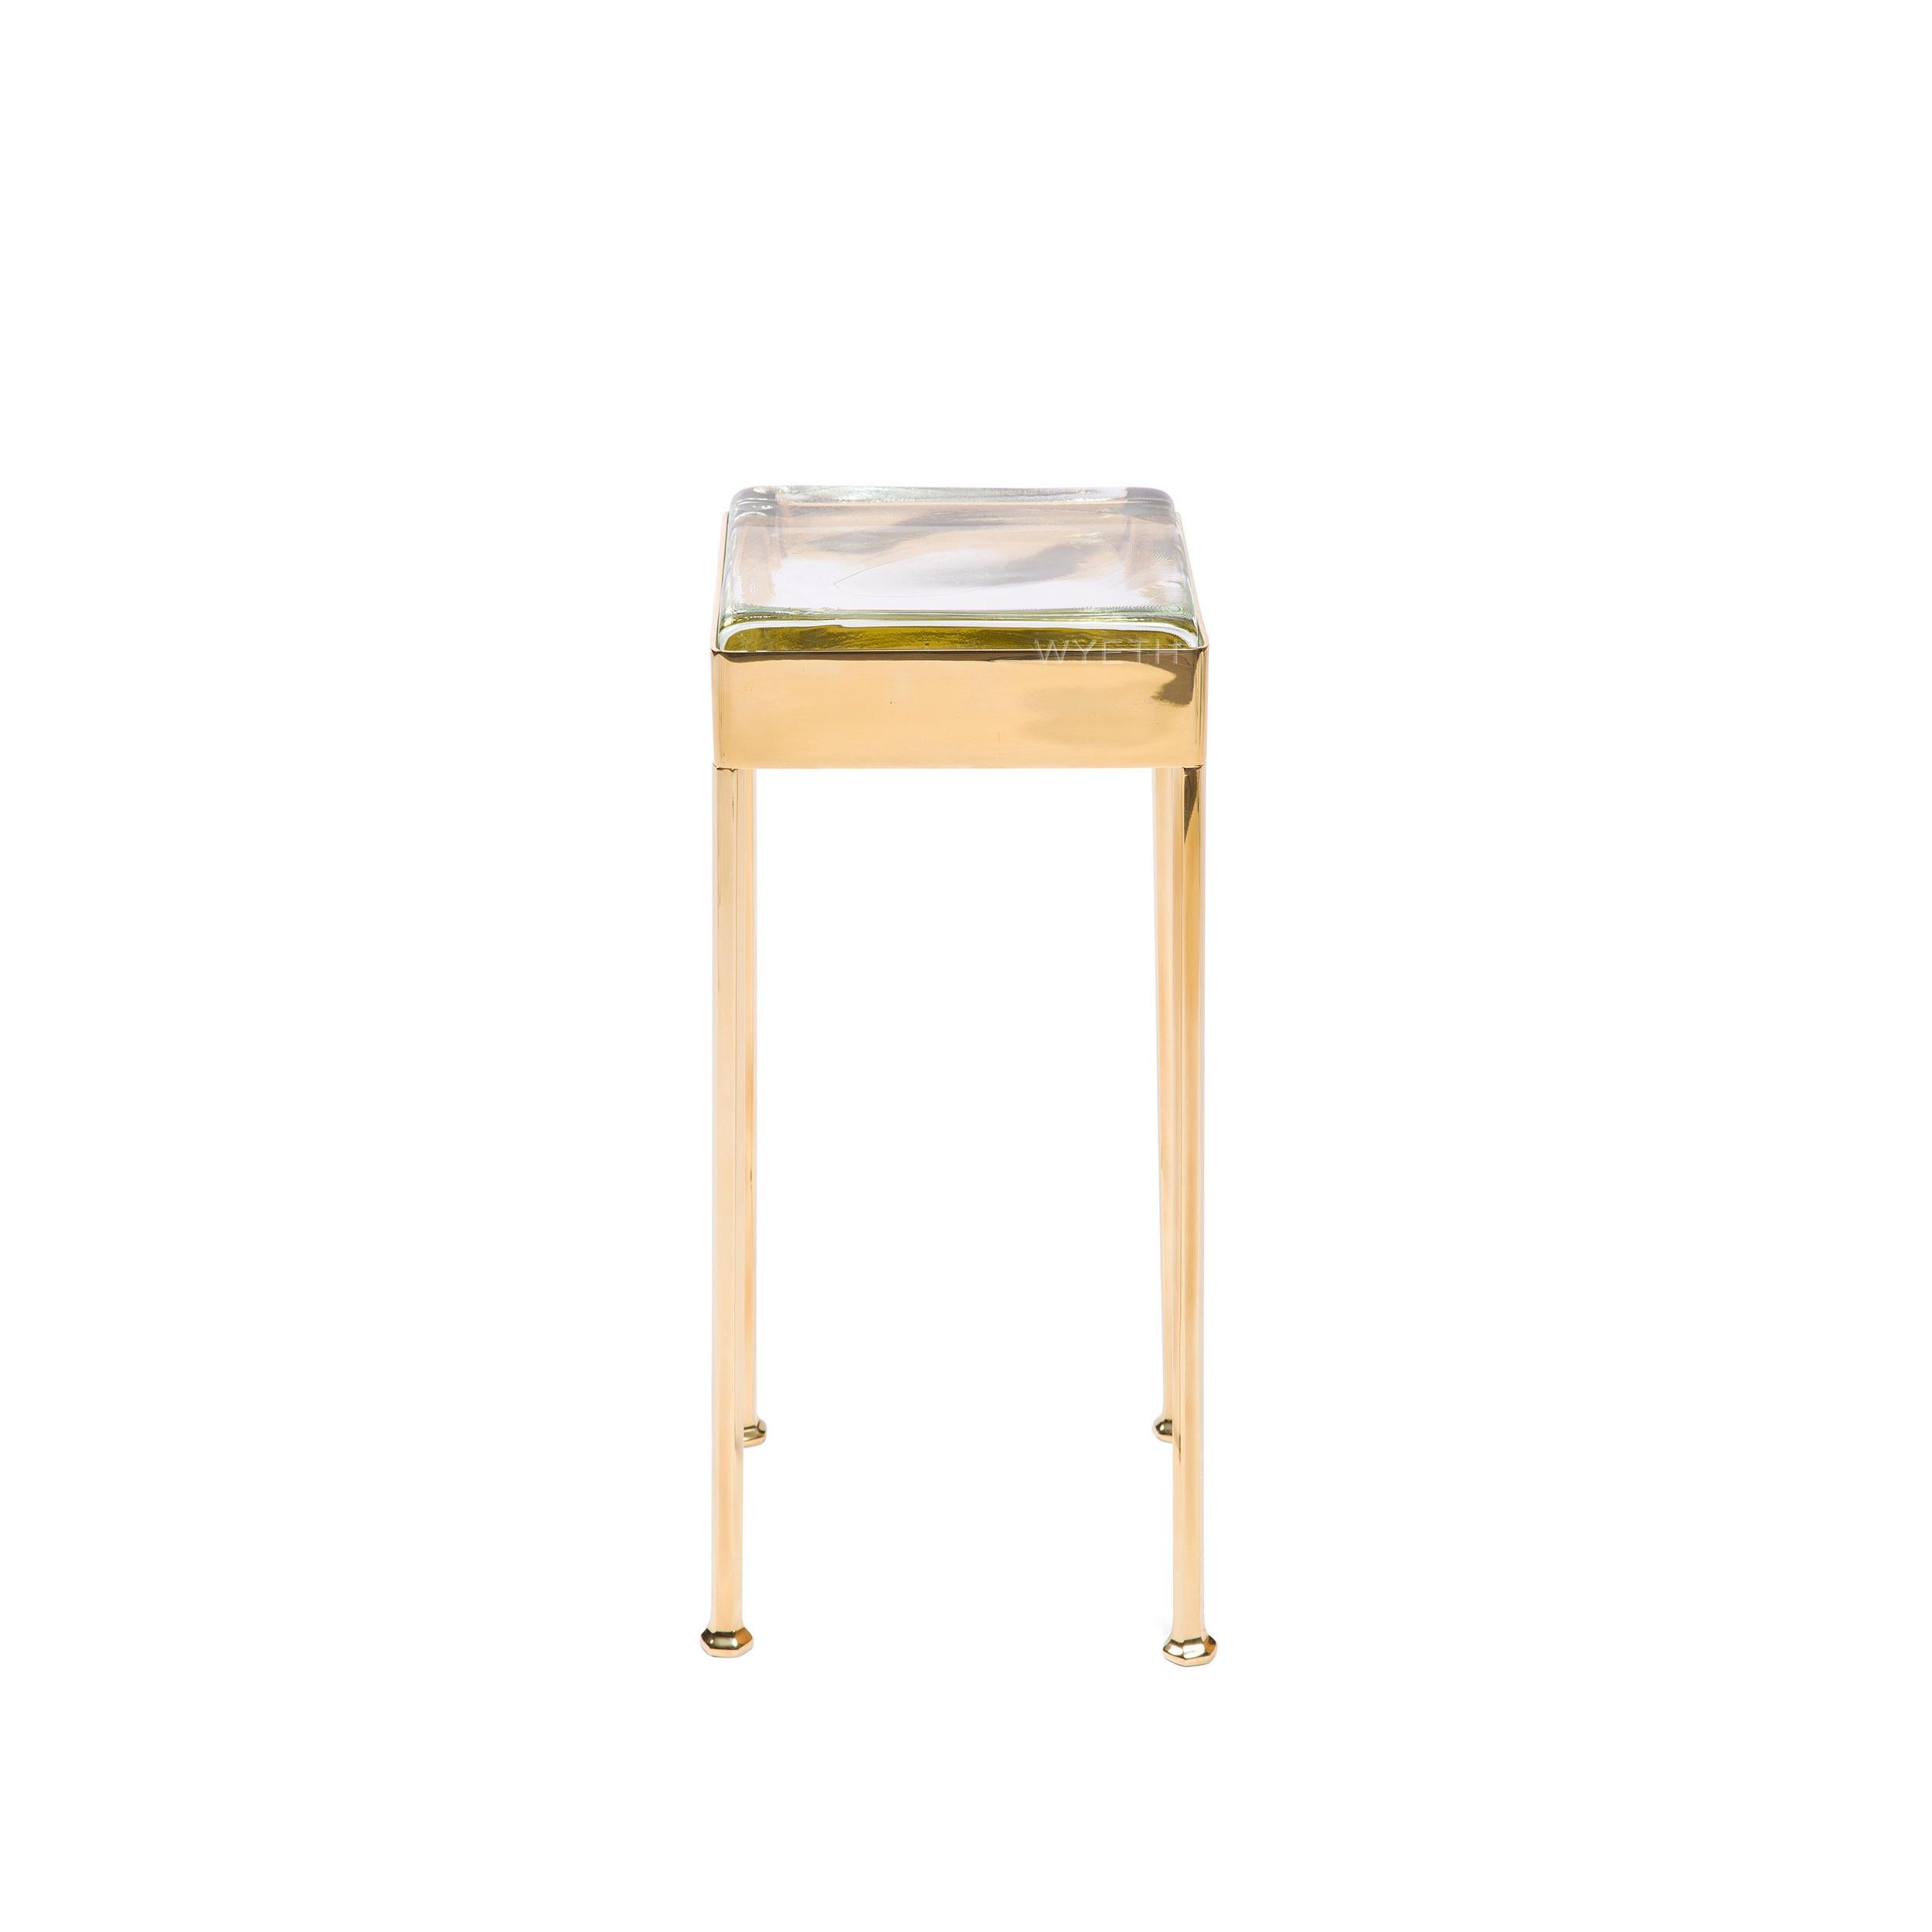 Cocktailtisch aus Bronze mit quadratischer Schürze, die eine Glasfliese hält, die auf vier facettierten Beinen ruht.